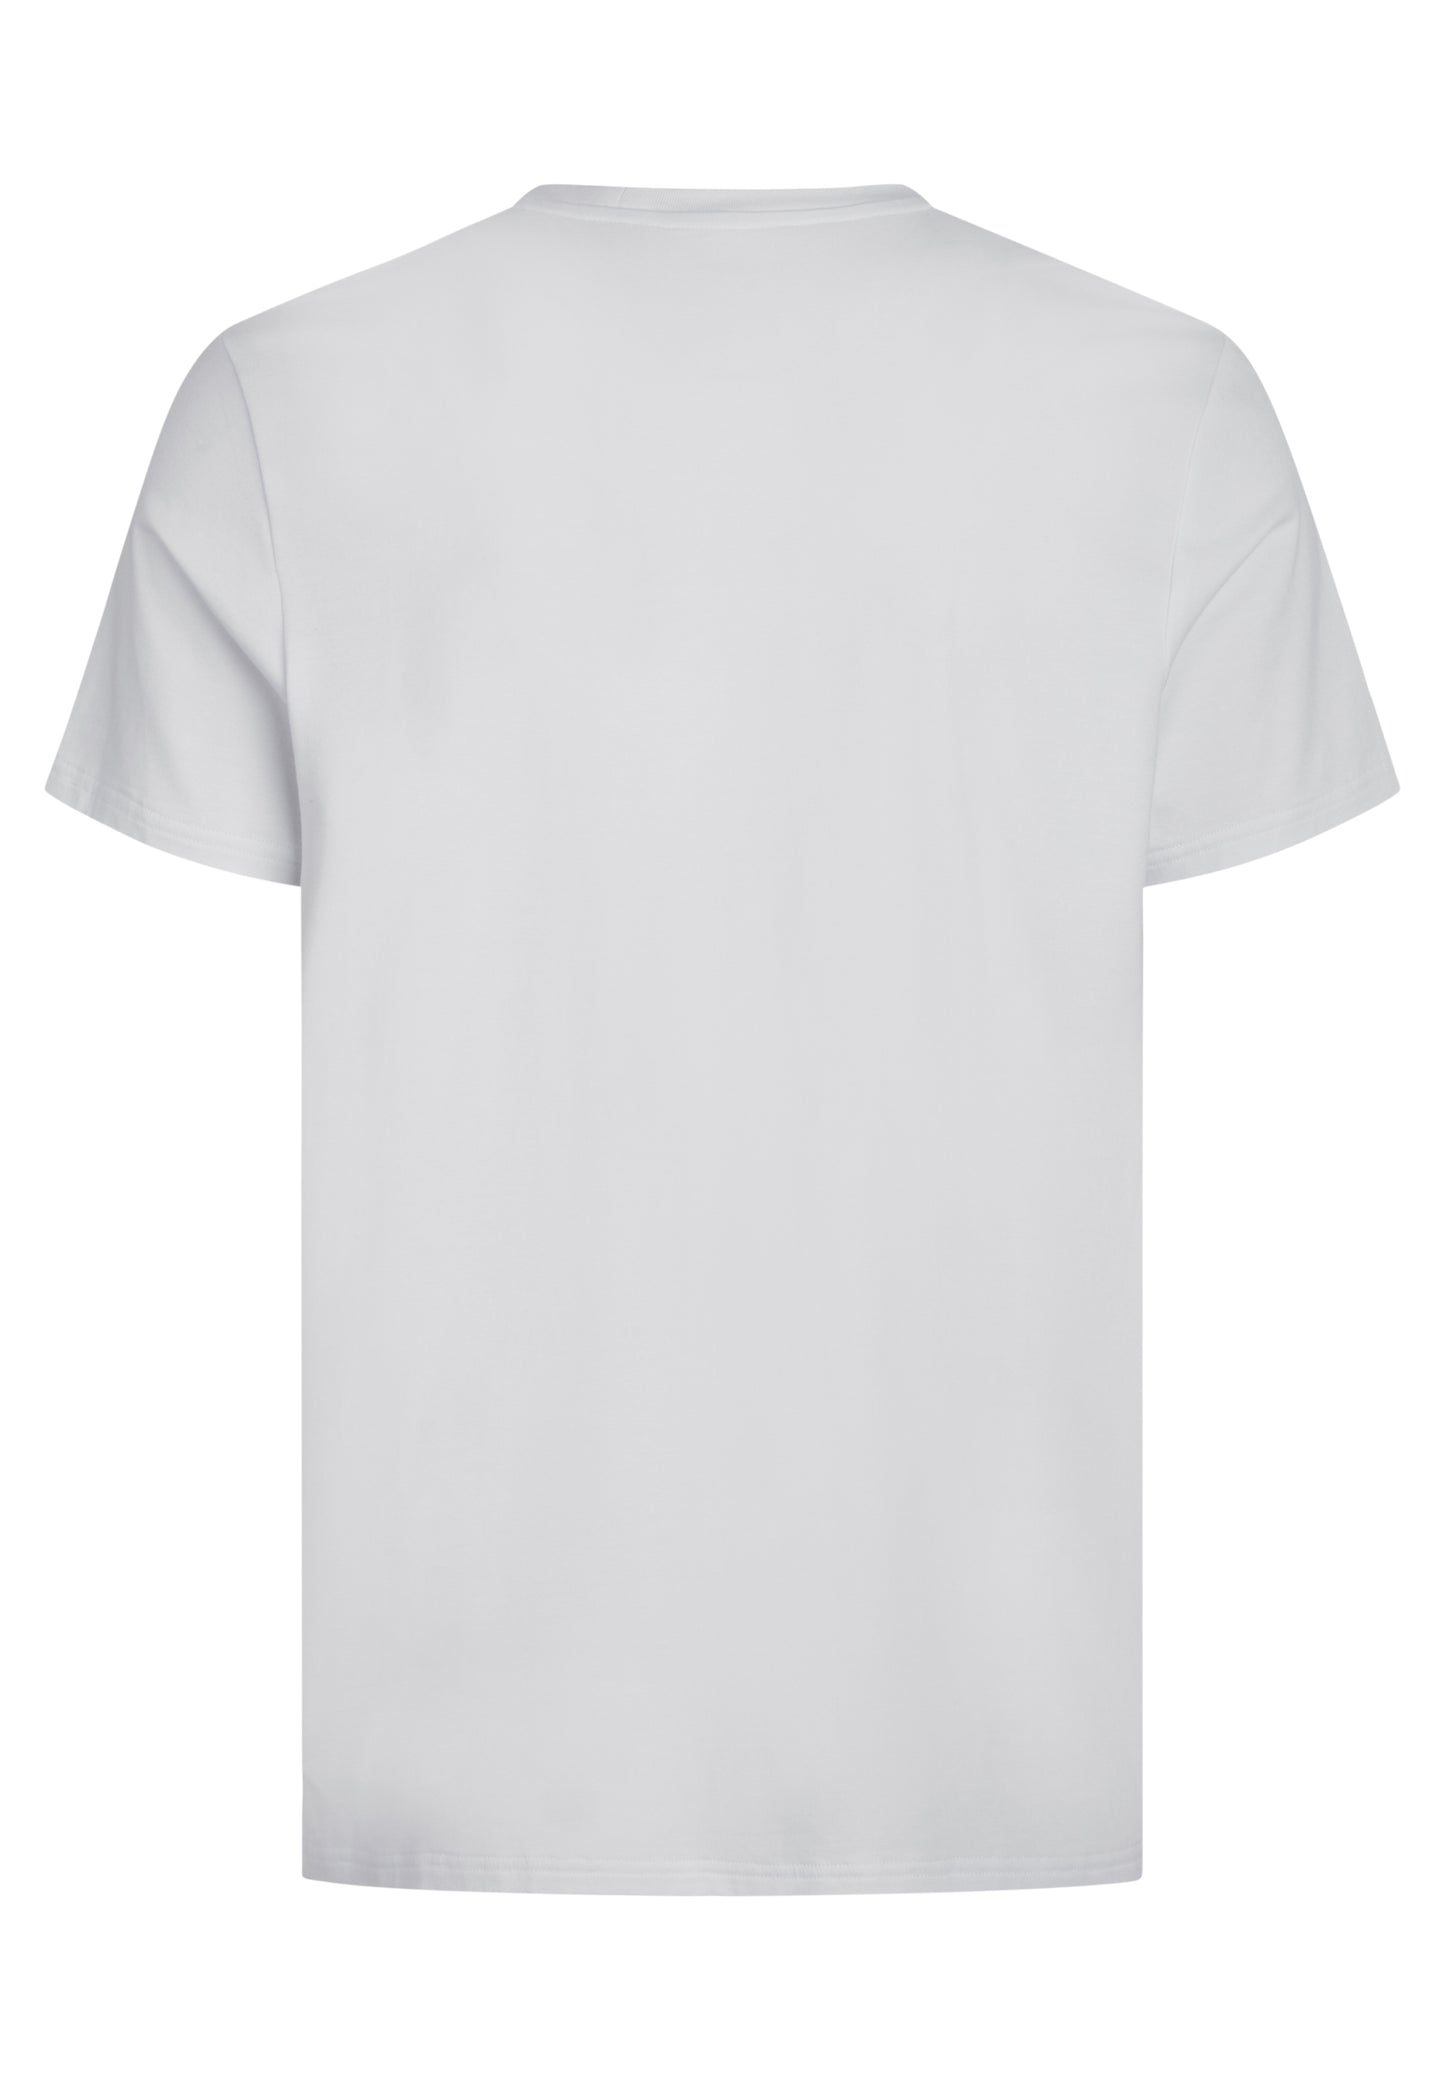 Bambus T-shirt til mænd hvid